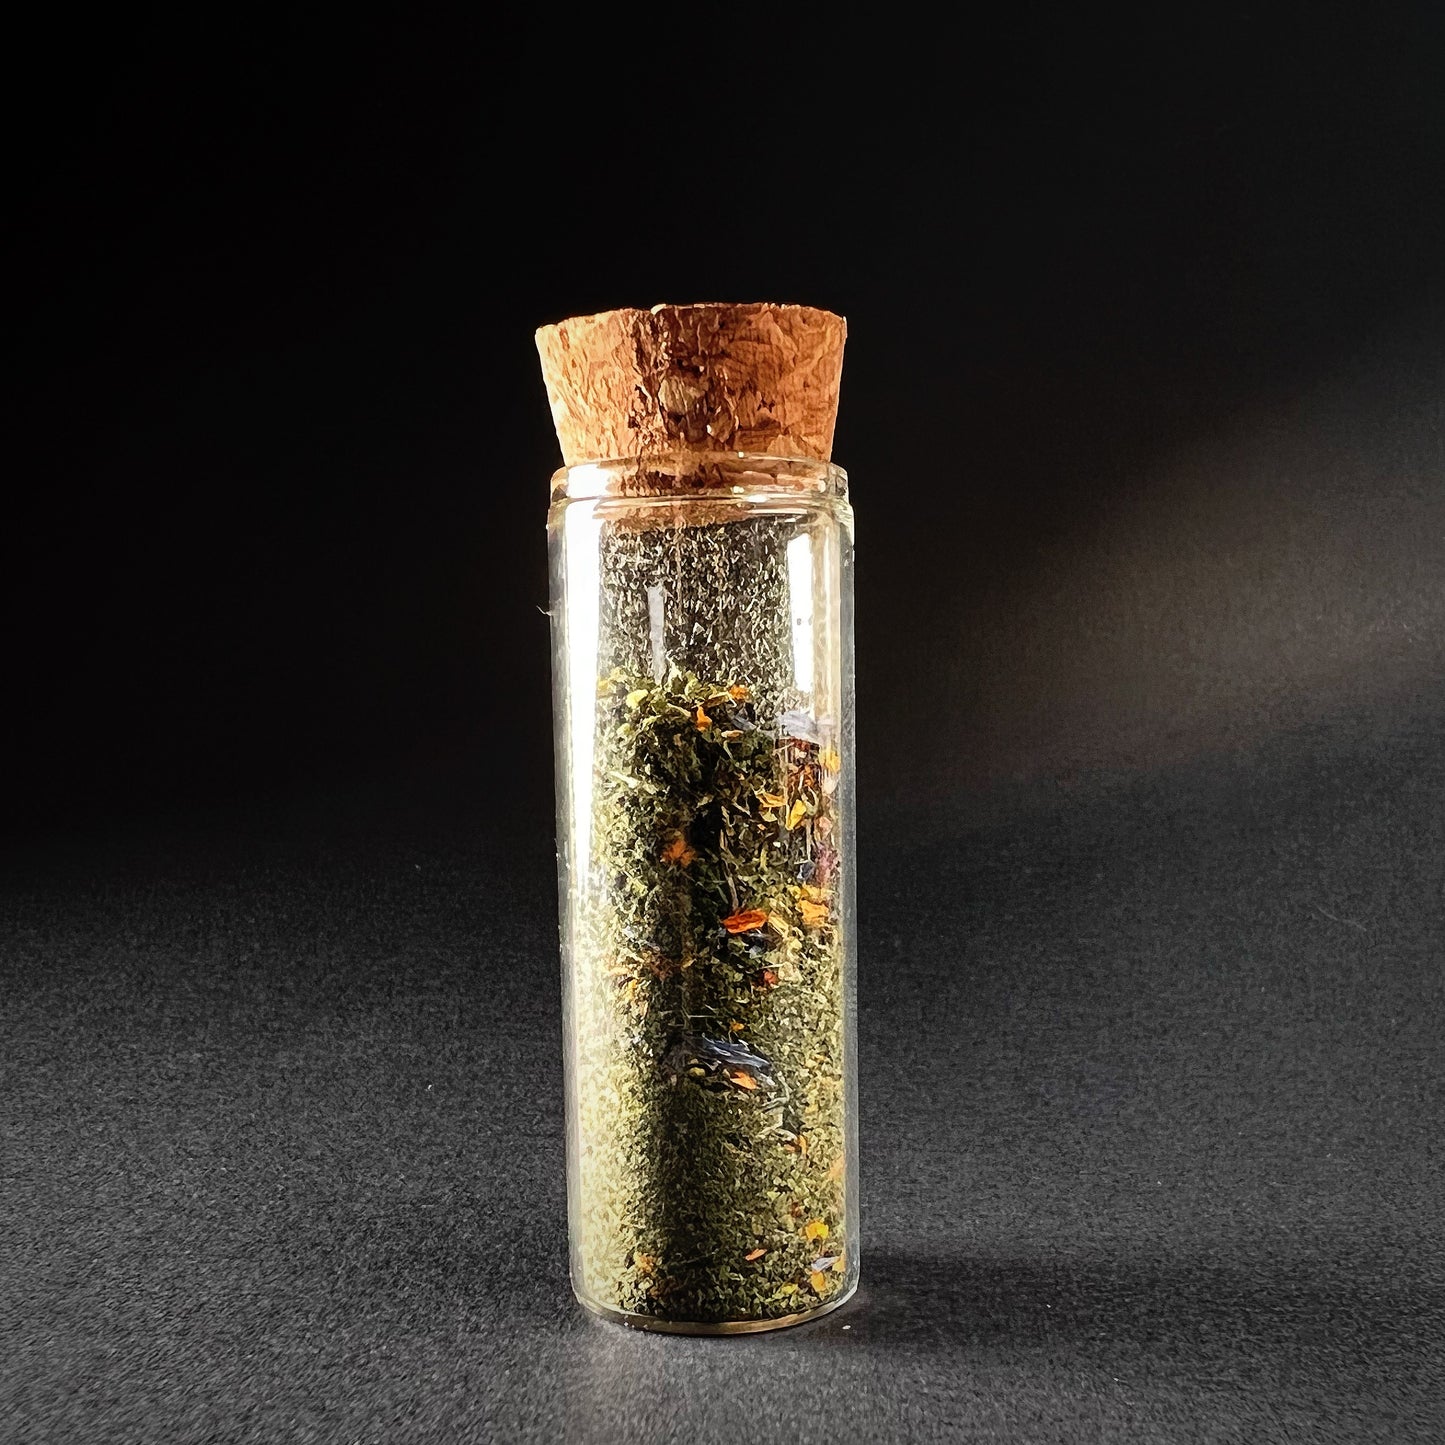 Ritual herbal blend - Ishtar - Purifico, 15ml